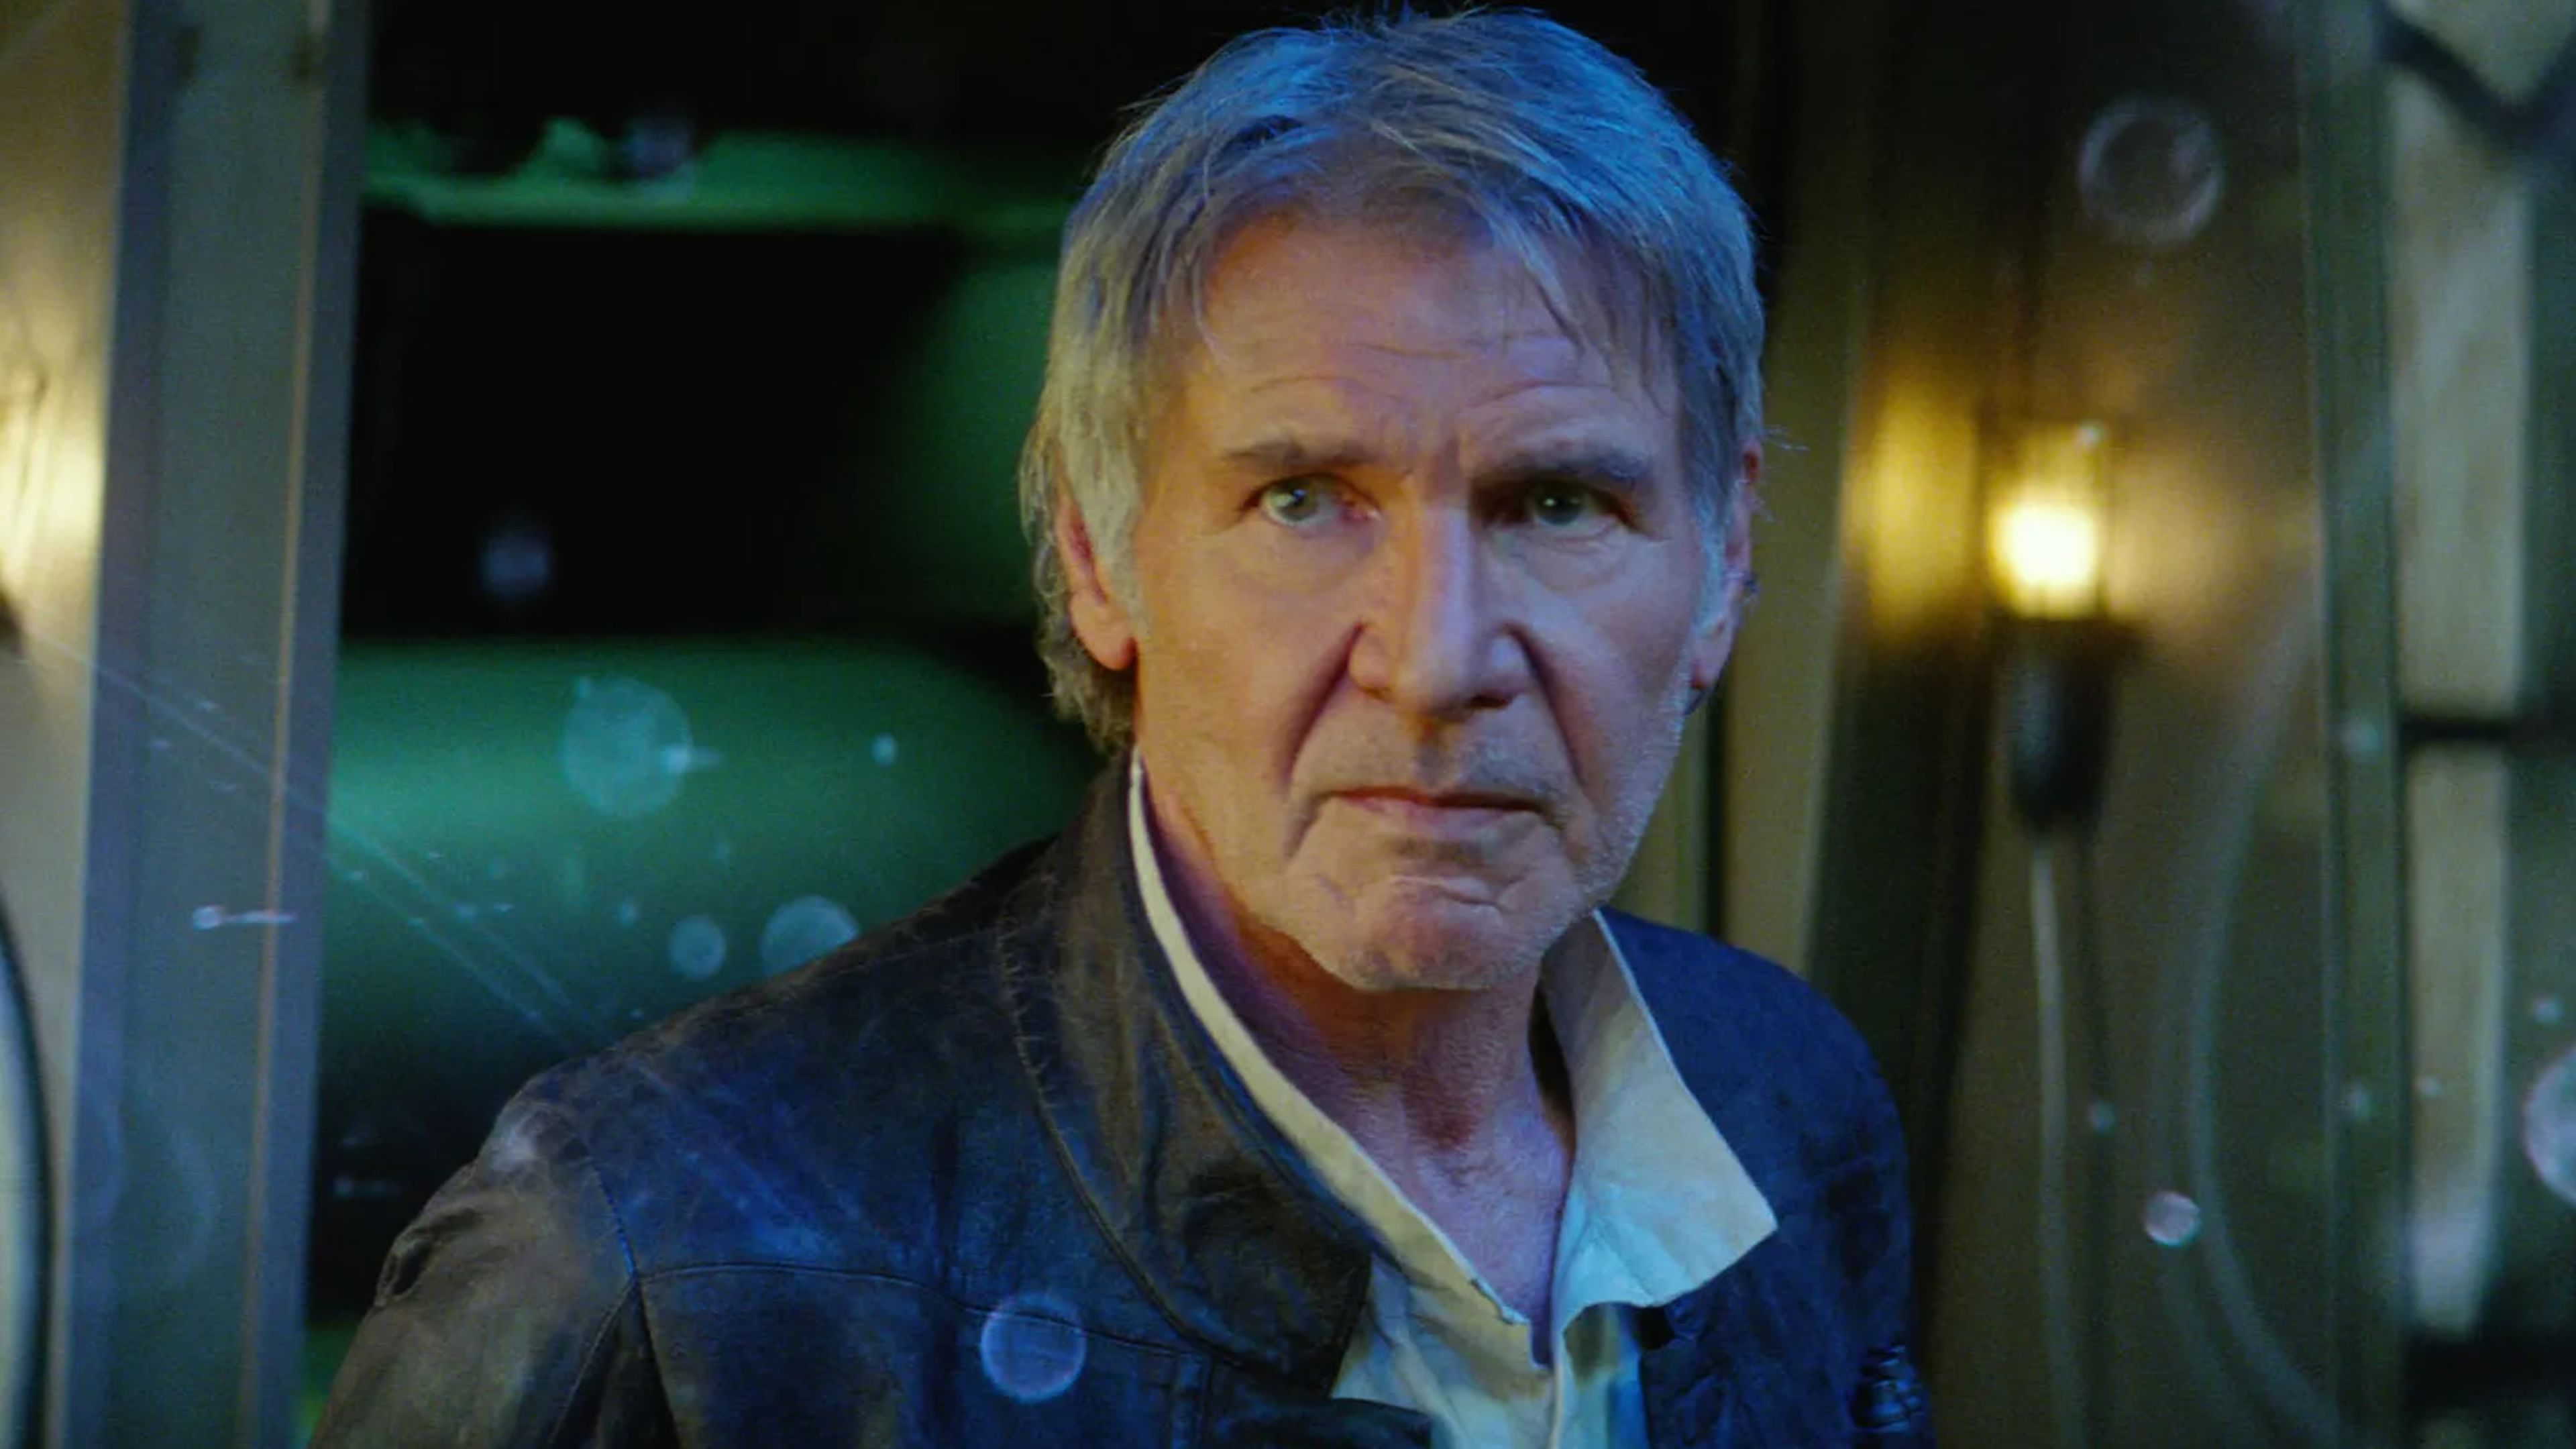 Star Wars: Episodio VII - El despertar de la Fuerza (2014) - Han Solo (Harrison Ford)